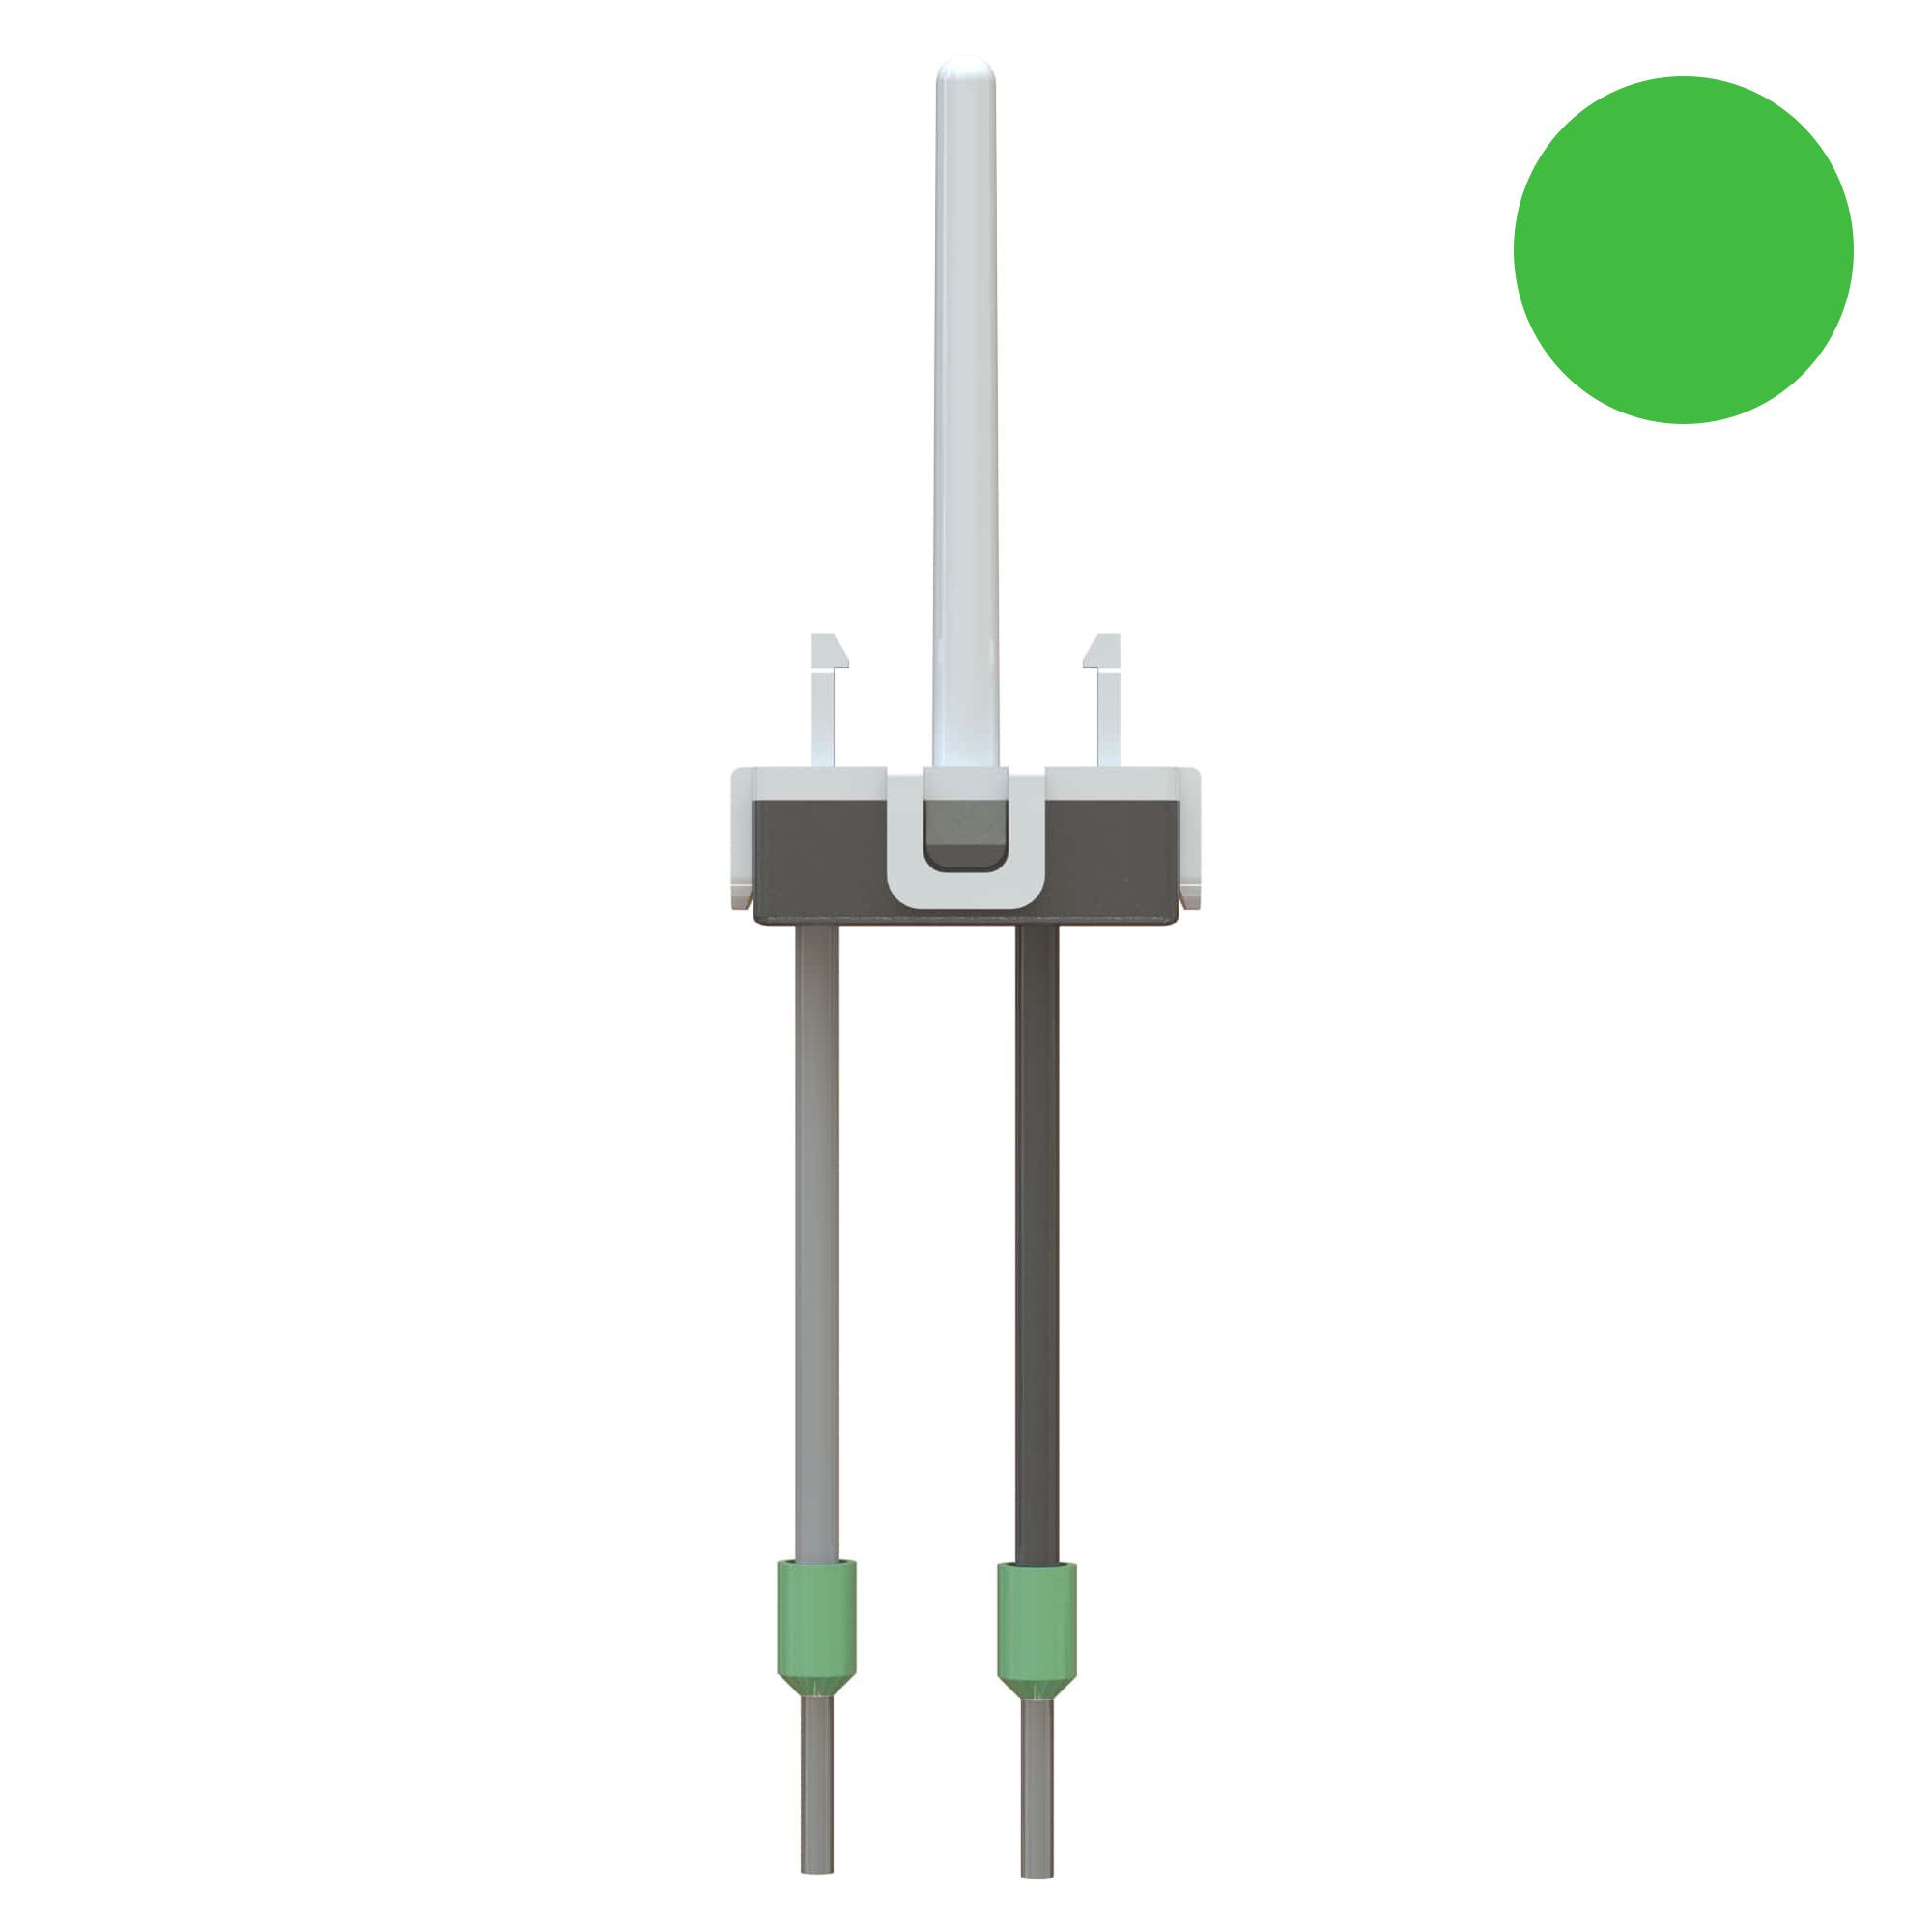 Leuchtpatrone LED grün für Schalter/Taster und Kleinkombi